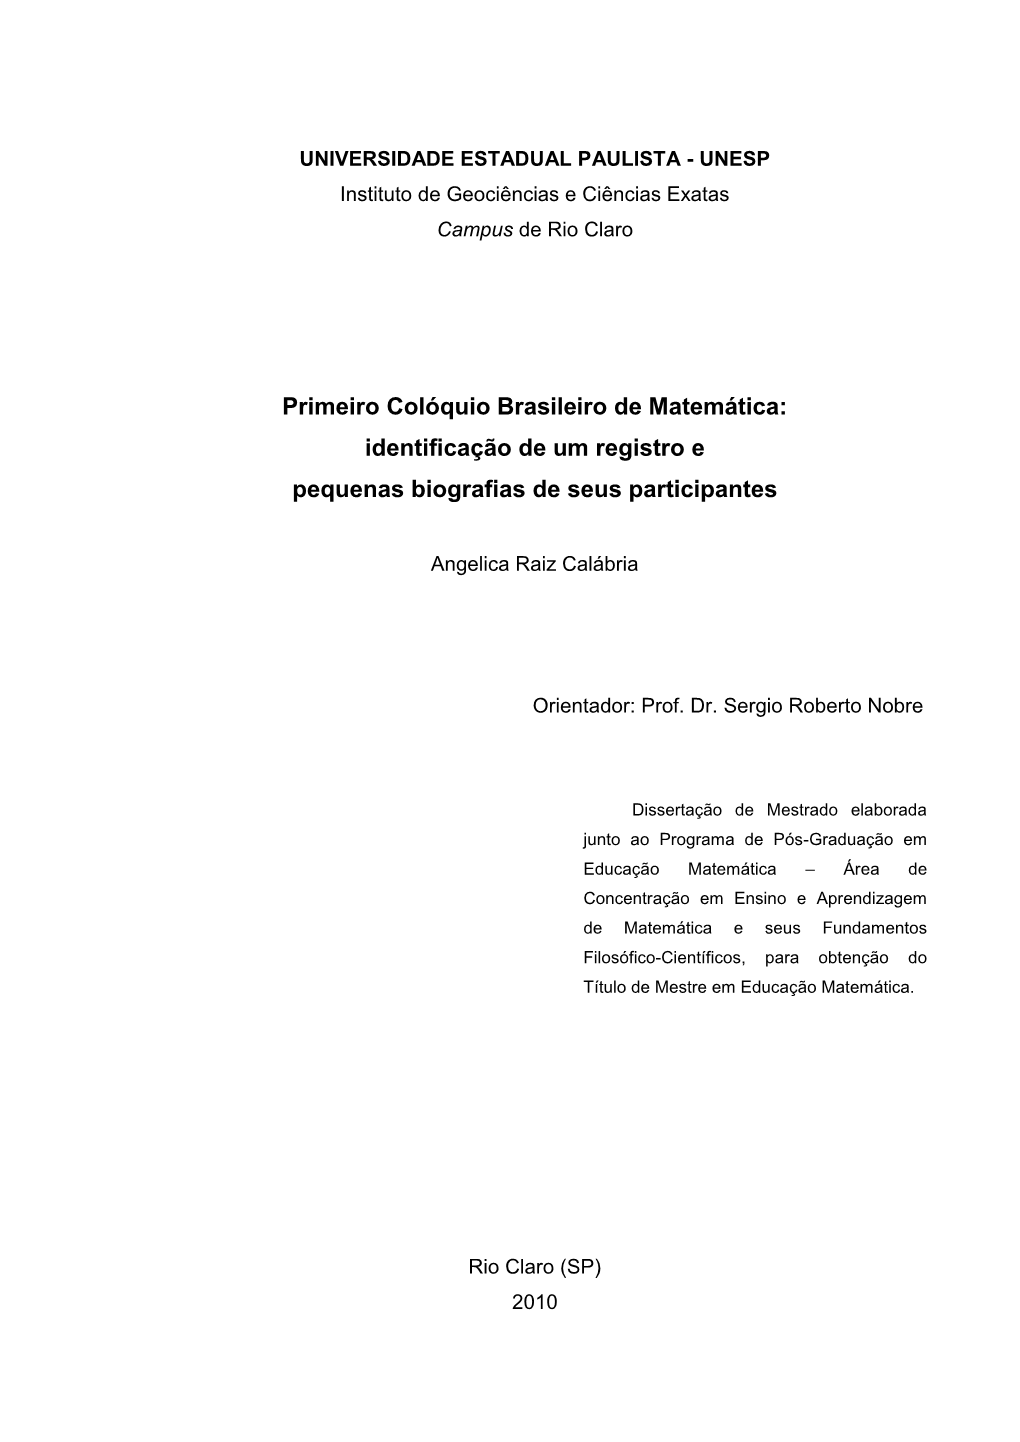 Primeiro Colóquio Brasileiro De Matemática: Identificação De Um Registro E Pequenas Biografias De Seus Participantes